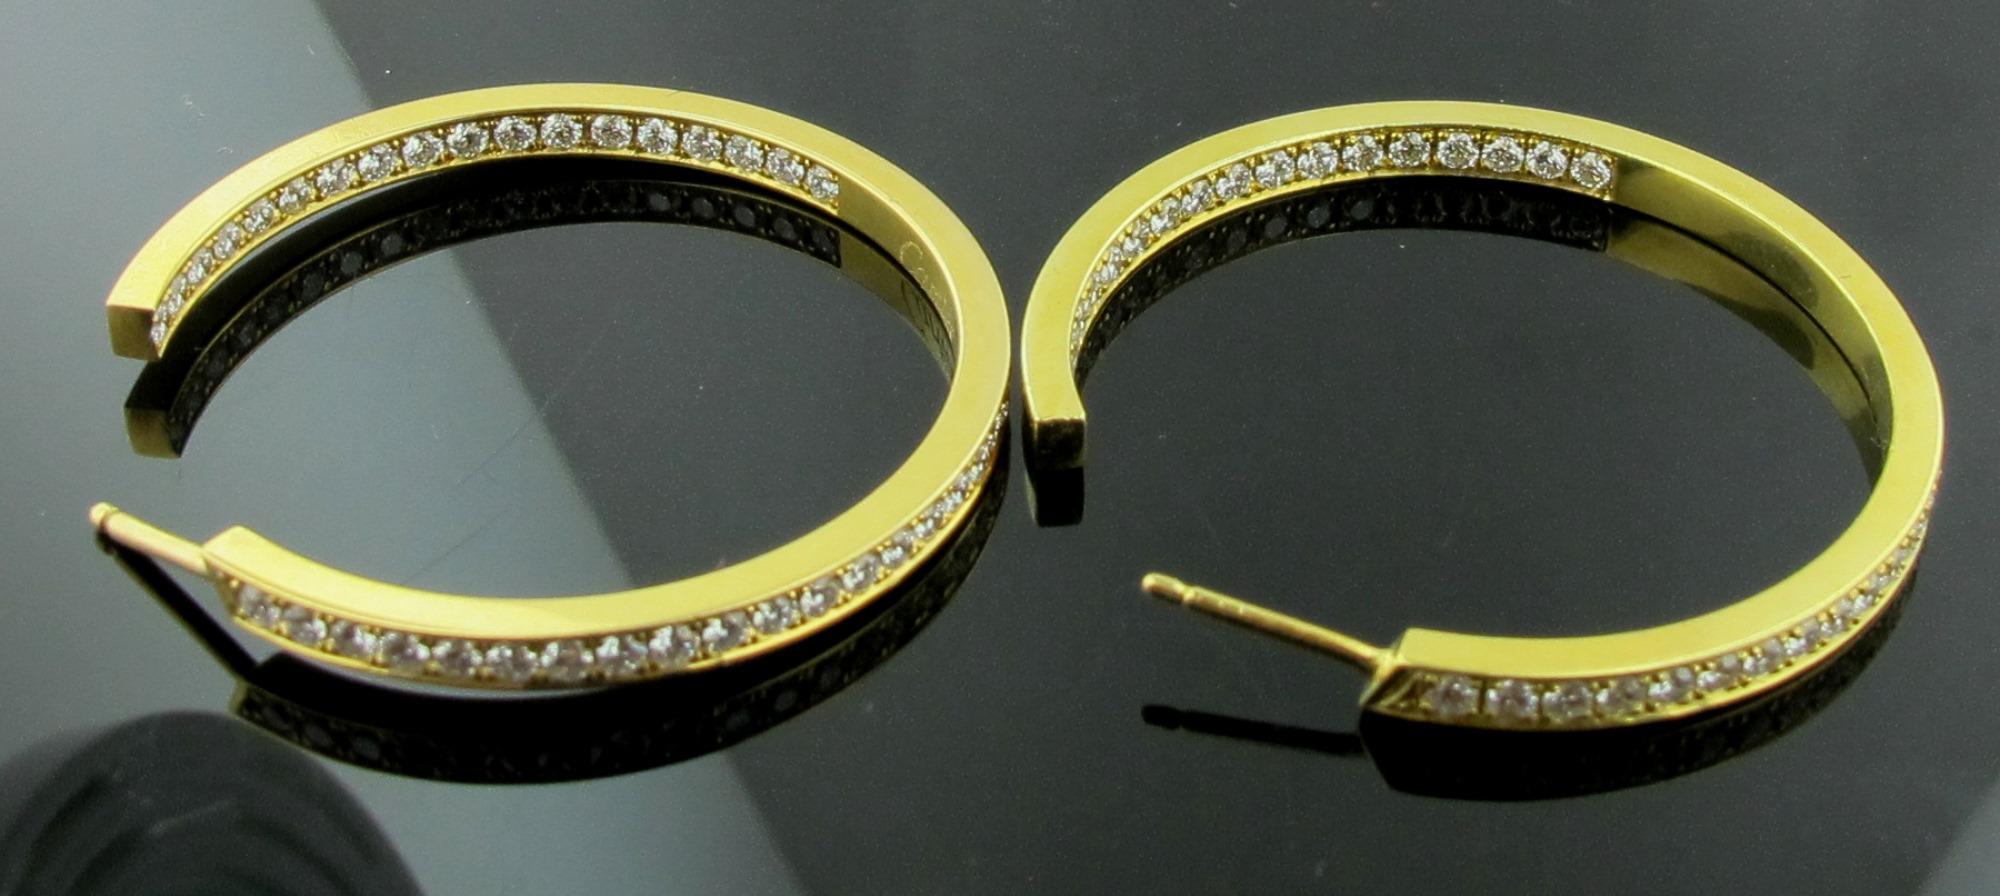 Women's or Men's Signed Cartier Inside Out Diamond Hoop Earrings in 18 Karat Yellow Gold